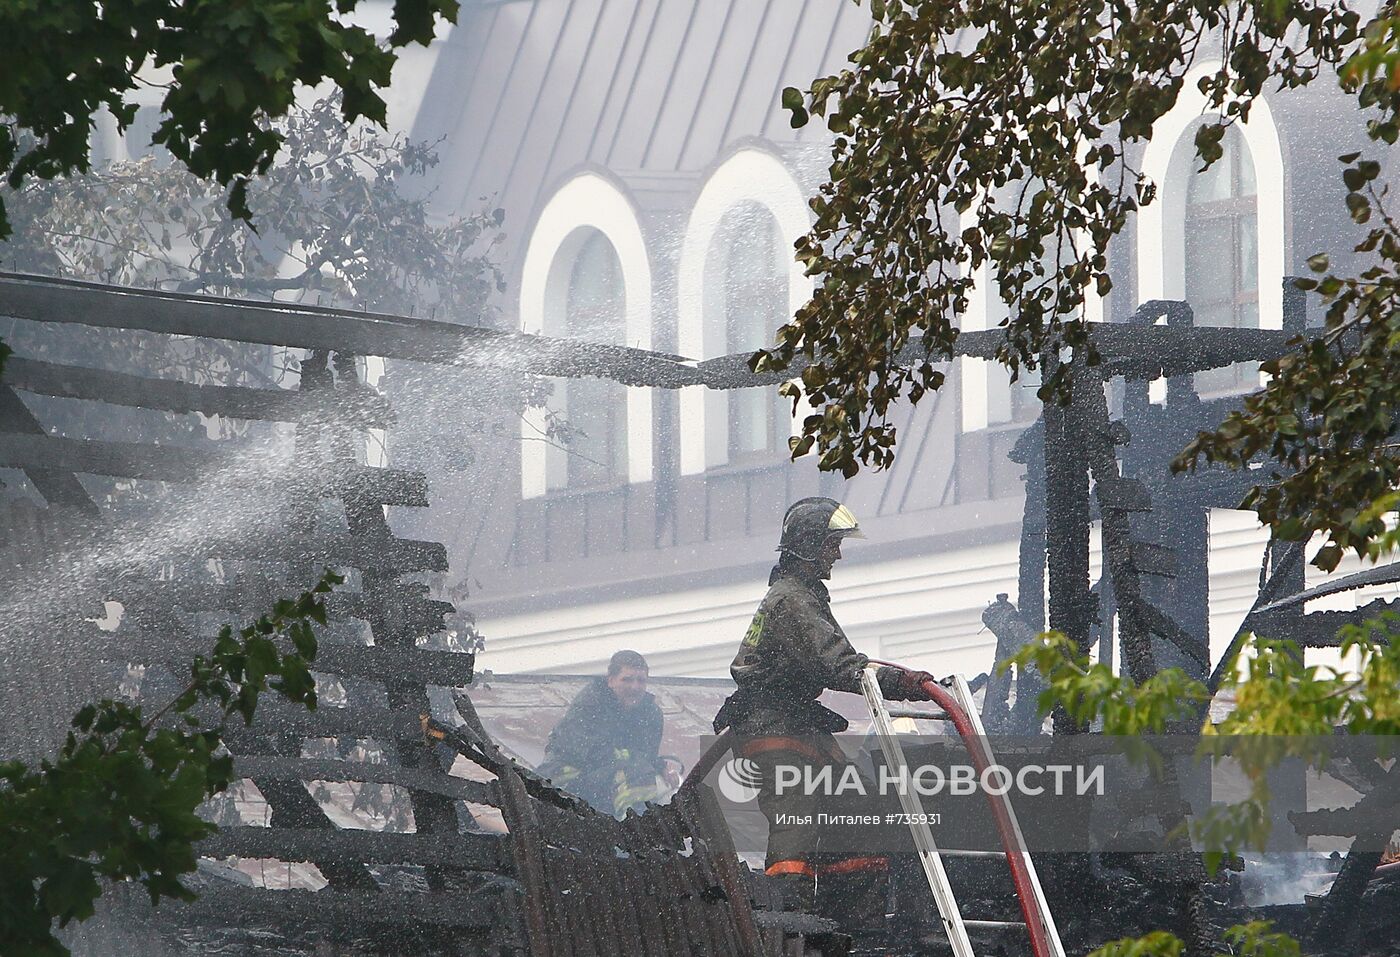 Возгорание деревянных построек у храма на Новой Басманной улице